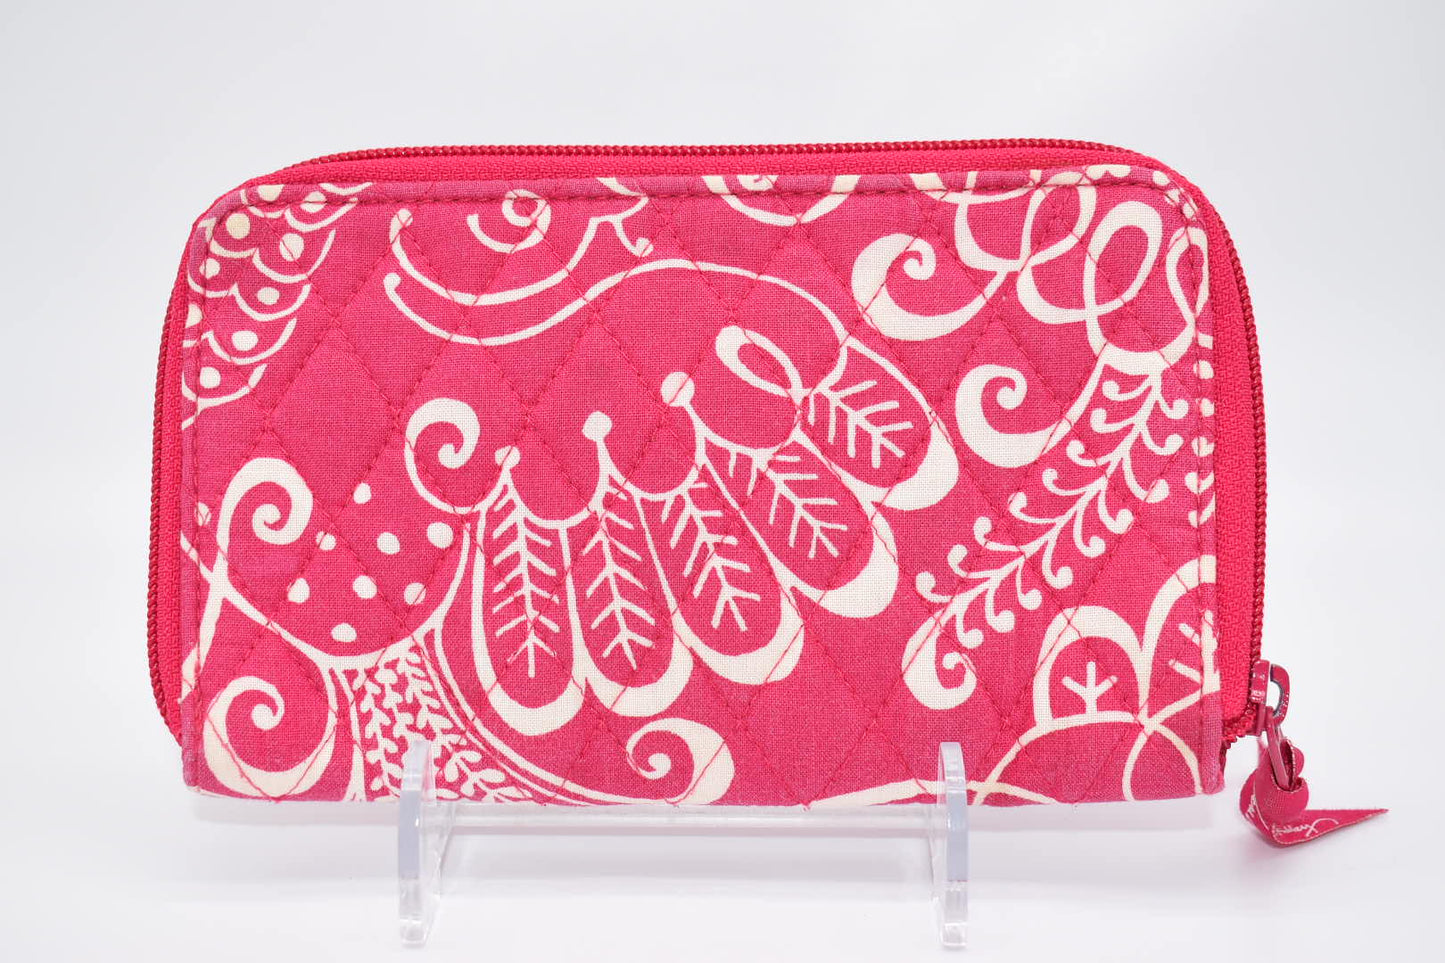 Vera Bradley Zip Around Wallet in "Cupcake Pink" Pattern